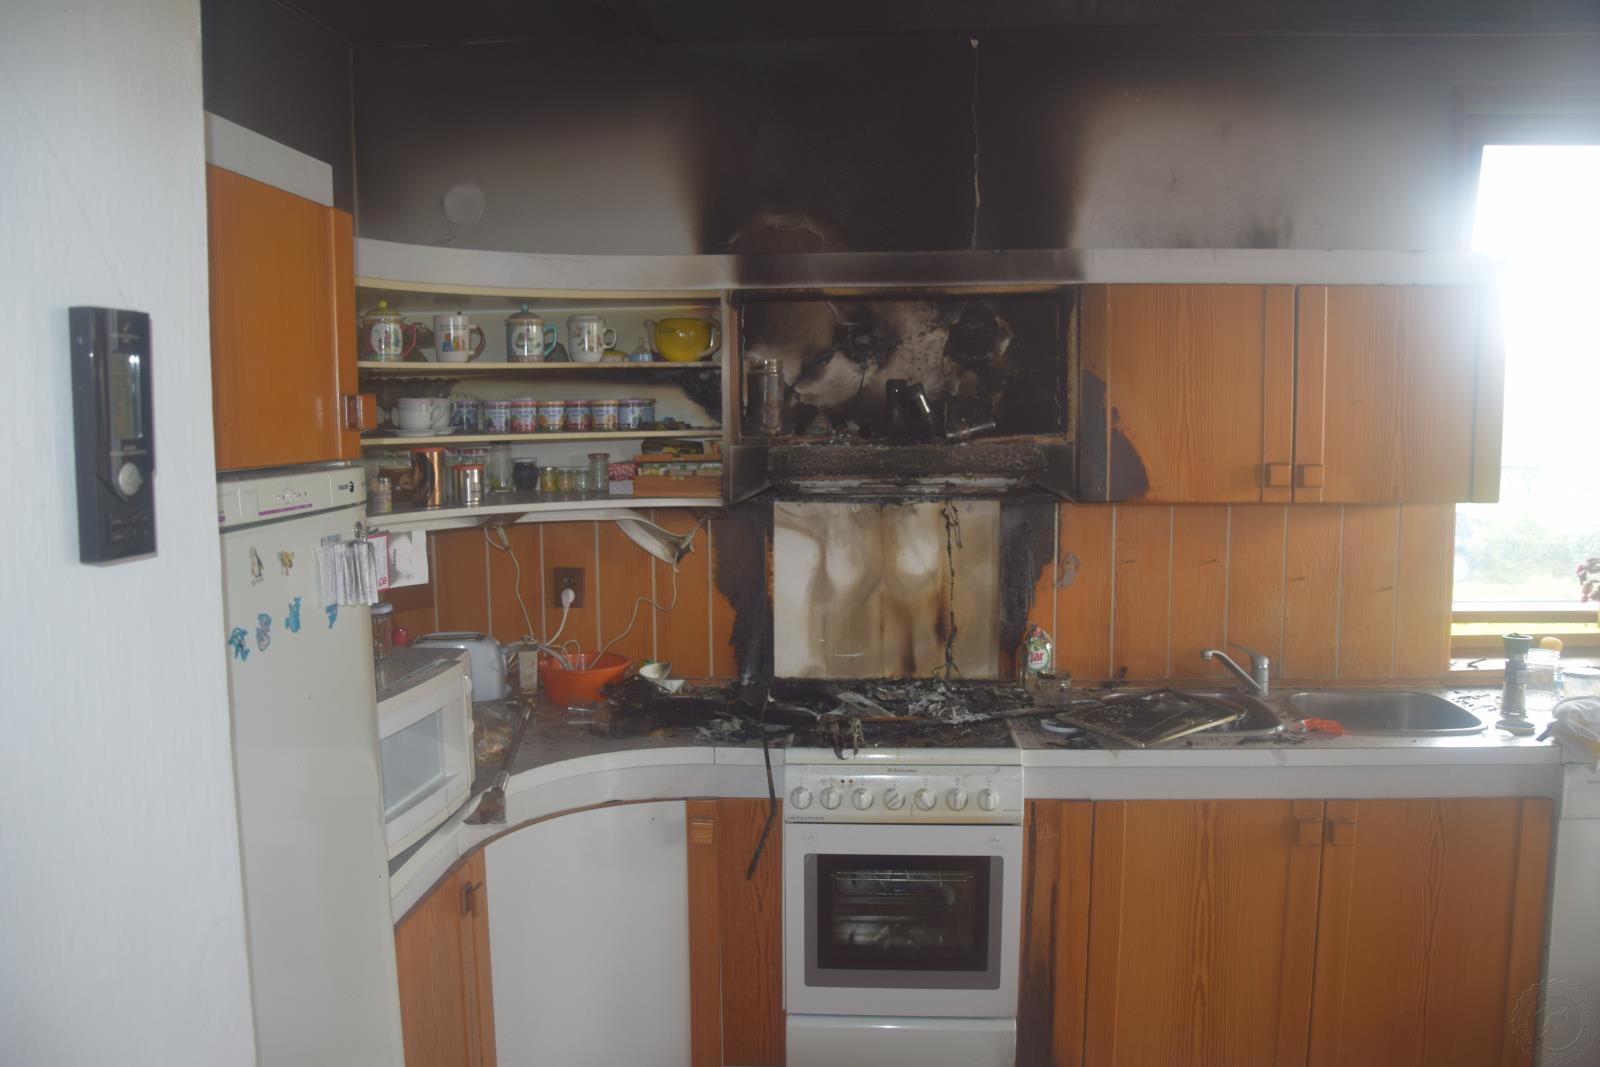 Požár v kuchyni 14.5.2021.JPG